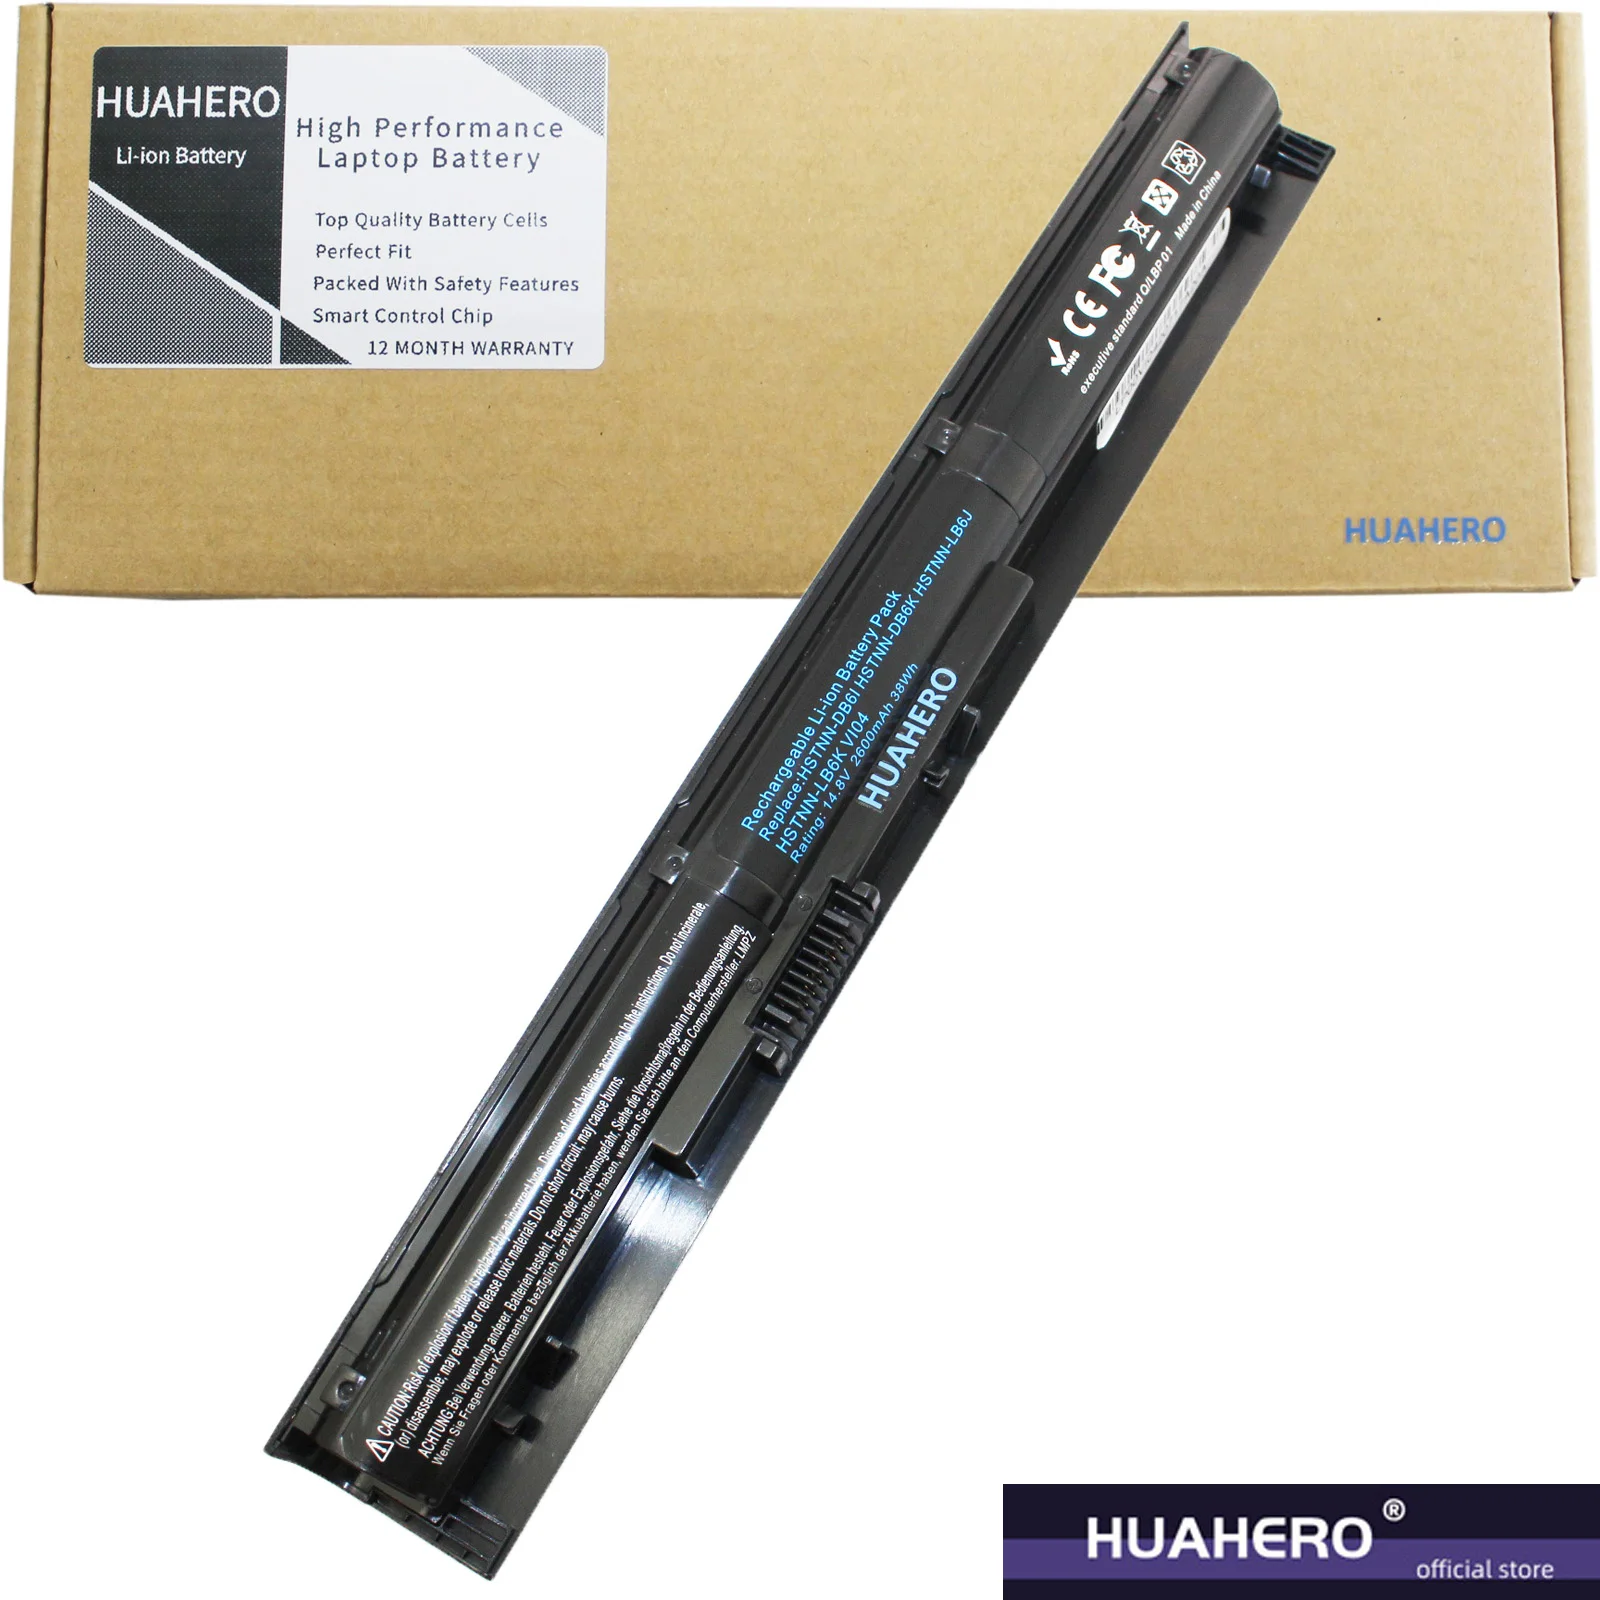 HUAHERO VI04 Baterija ZA HP ProBook 440 445 450 455 G2 Envy 14 v000 v099 15 k000 k099 17 f000 f099 756743 001 756745 756744 001